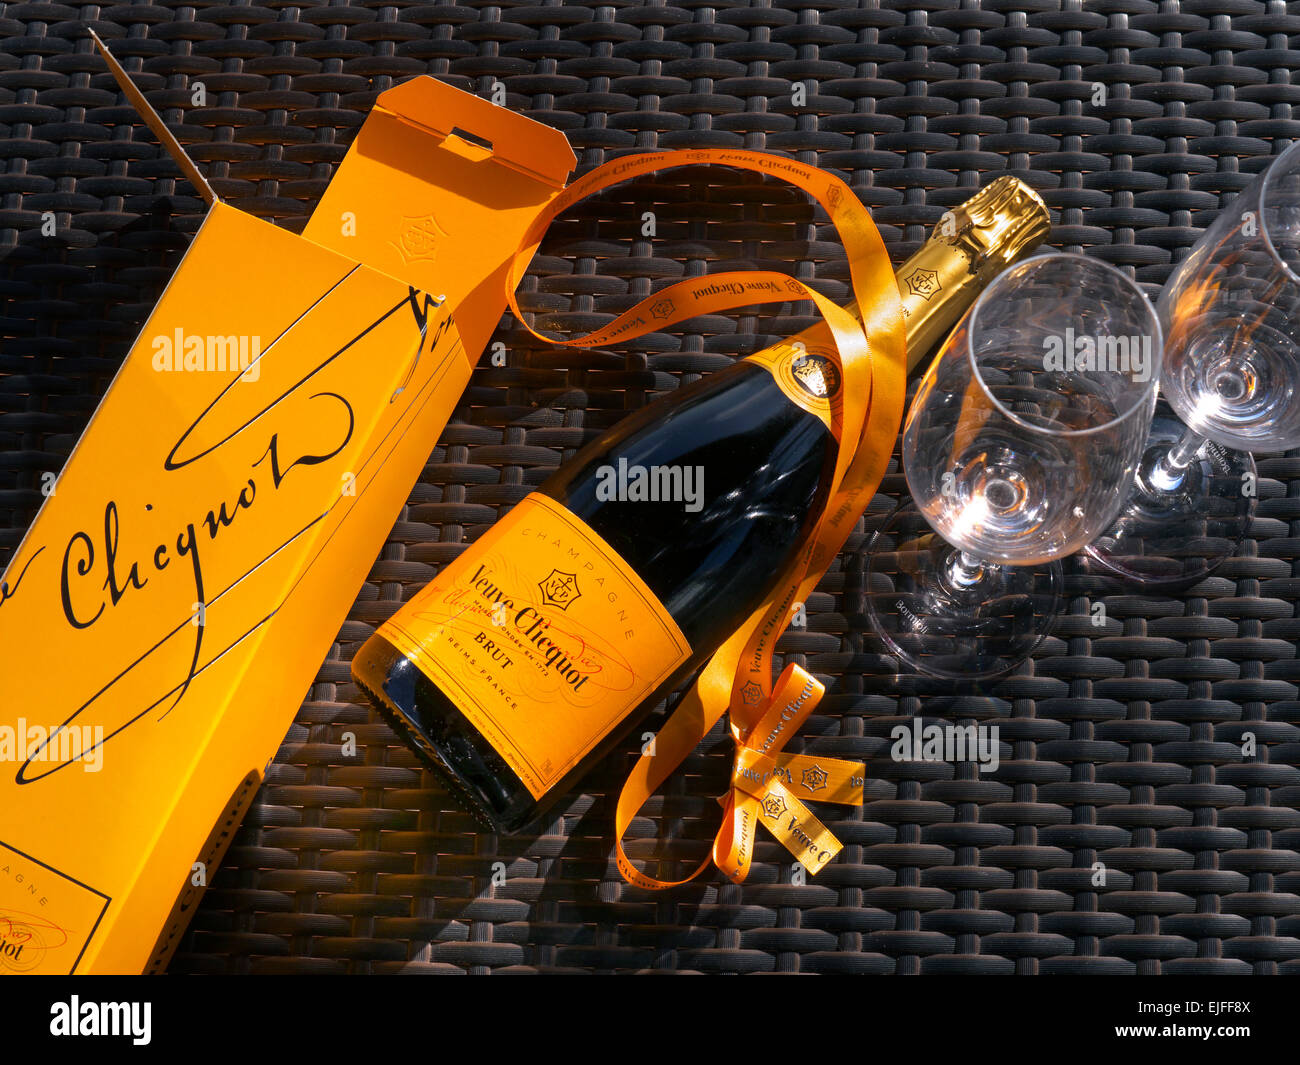 Flasche Veuve Clicquot Champagner Geschenkbox und Gläser auf sonnigen Outdoor-Wicker Tischfläche Stockfoto